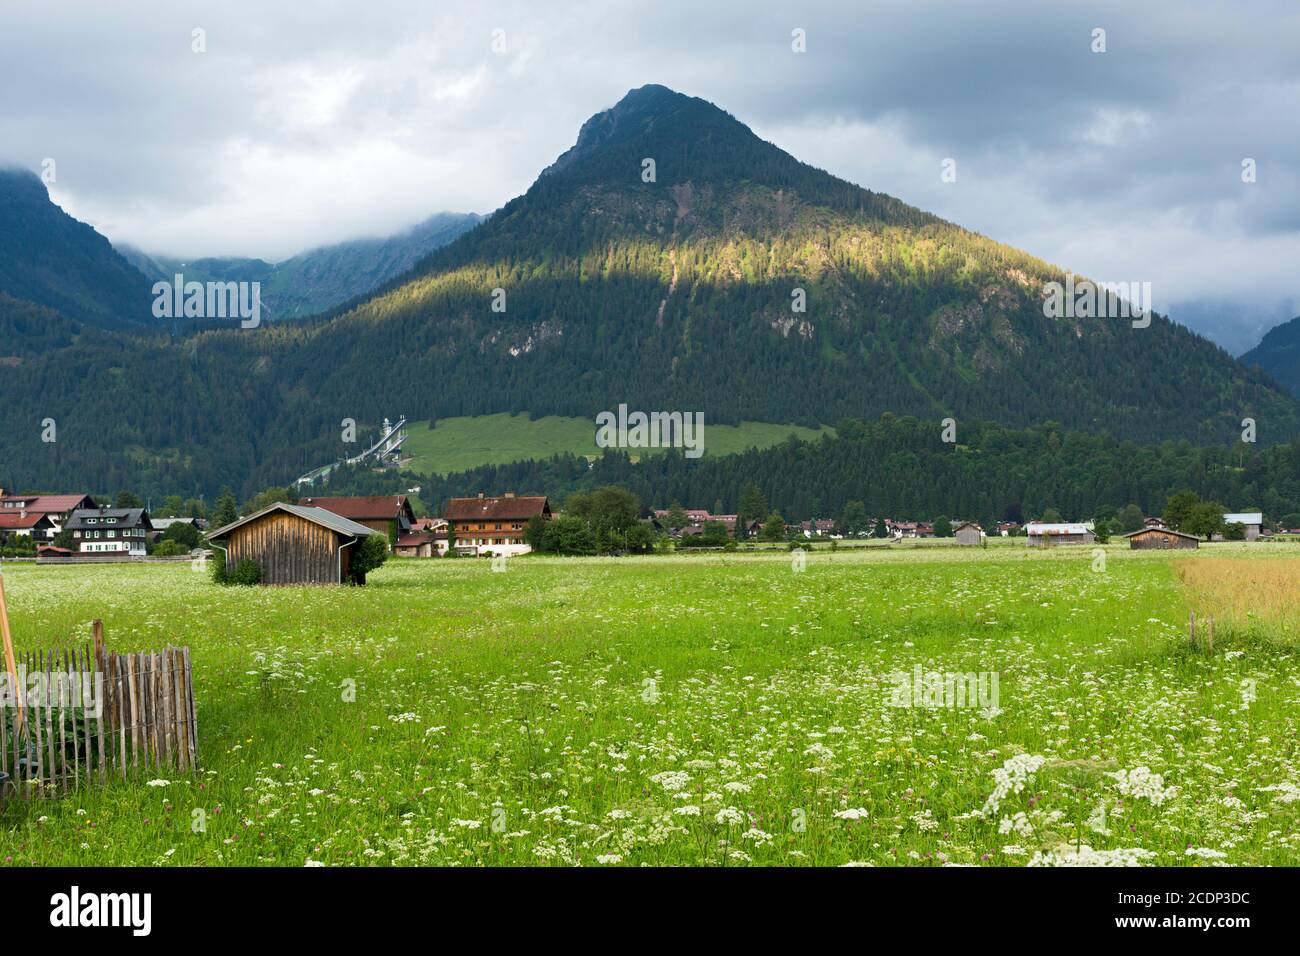 Oberstdorf, Scheune, Häuser, Sprungschanze, bewaldete Berge, Sonnenlicht, tiefliegende Wolken Stock Photo